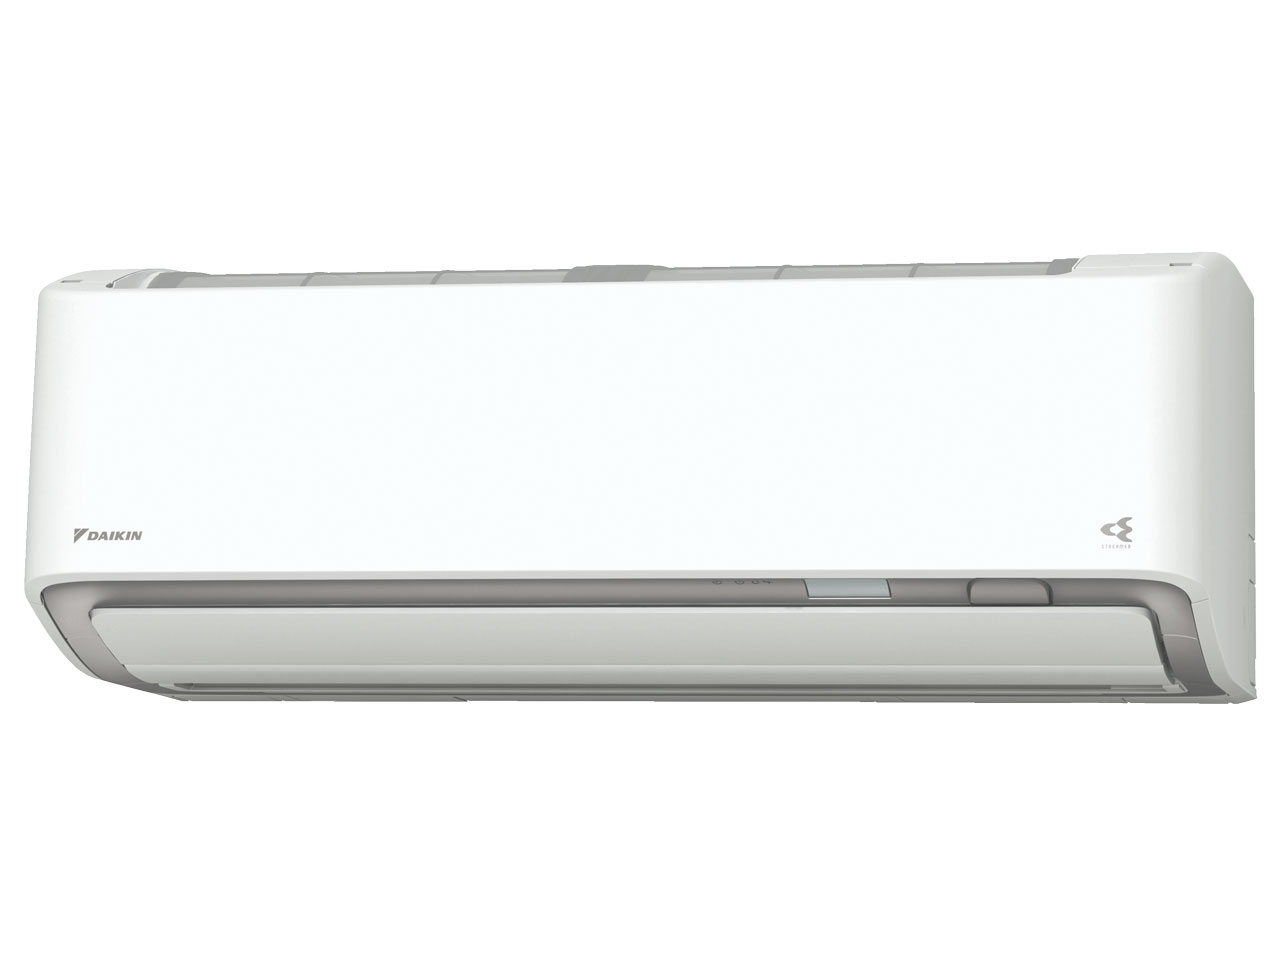 価格.com - S40XTAXV-W [ホワイト] の製品画像